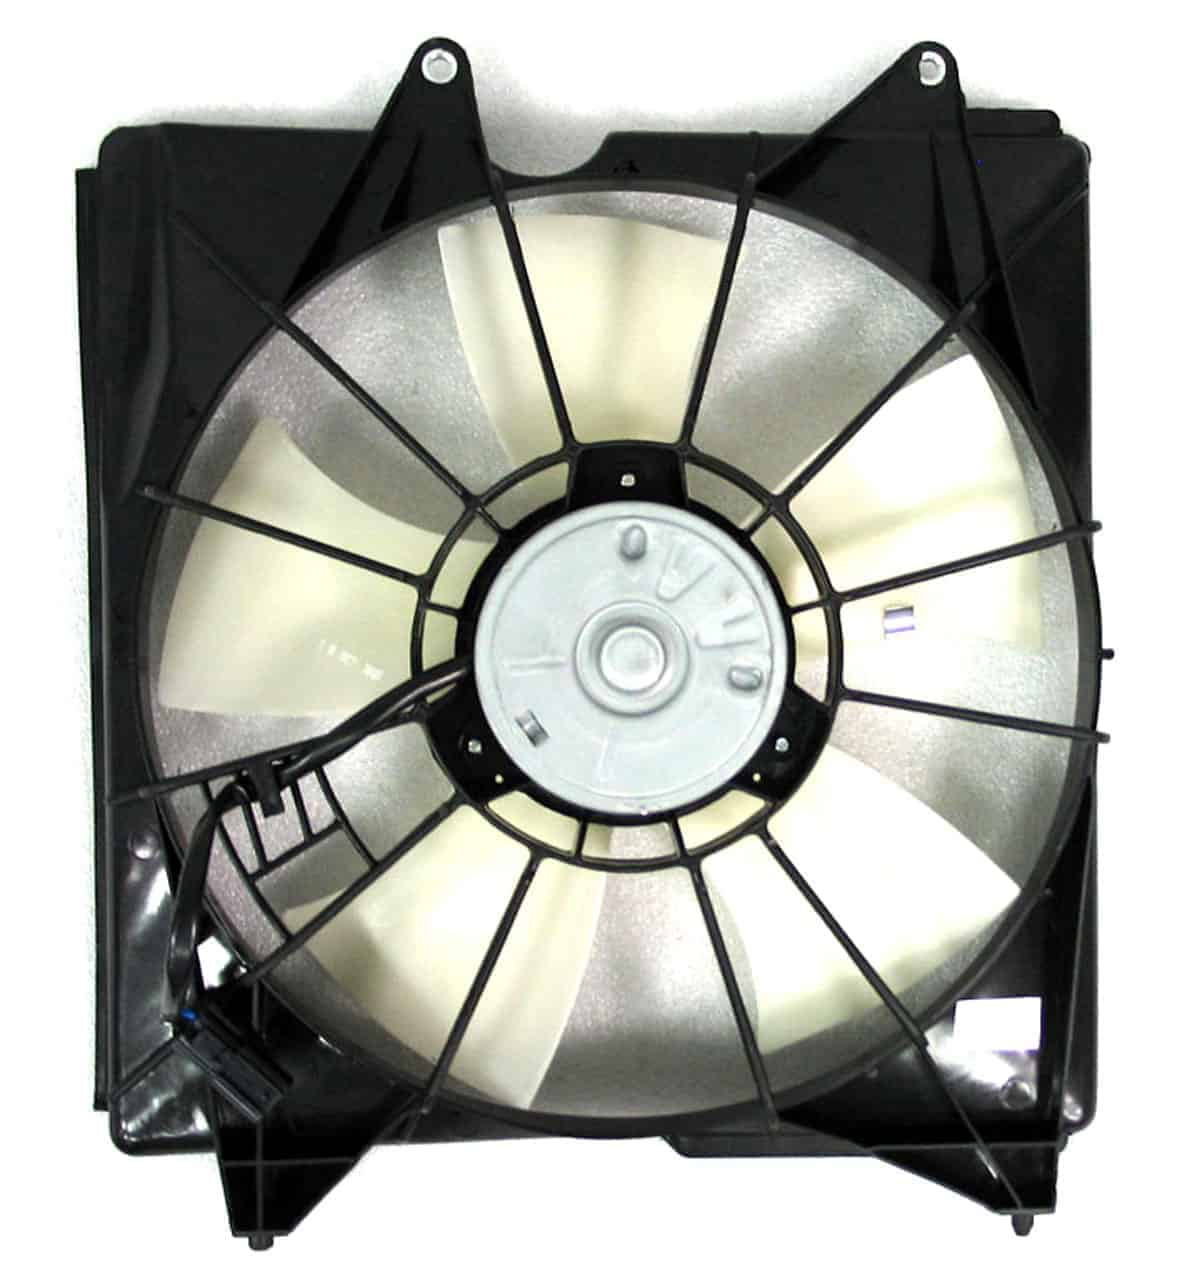 NI3110132 Cooling System Fan Shroud Radiator